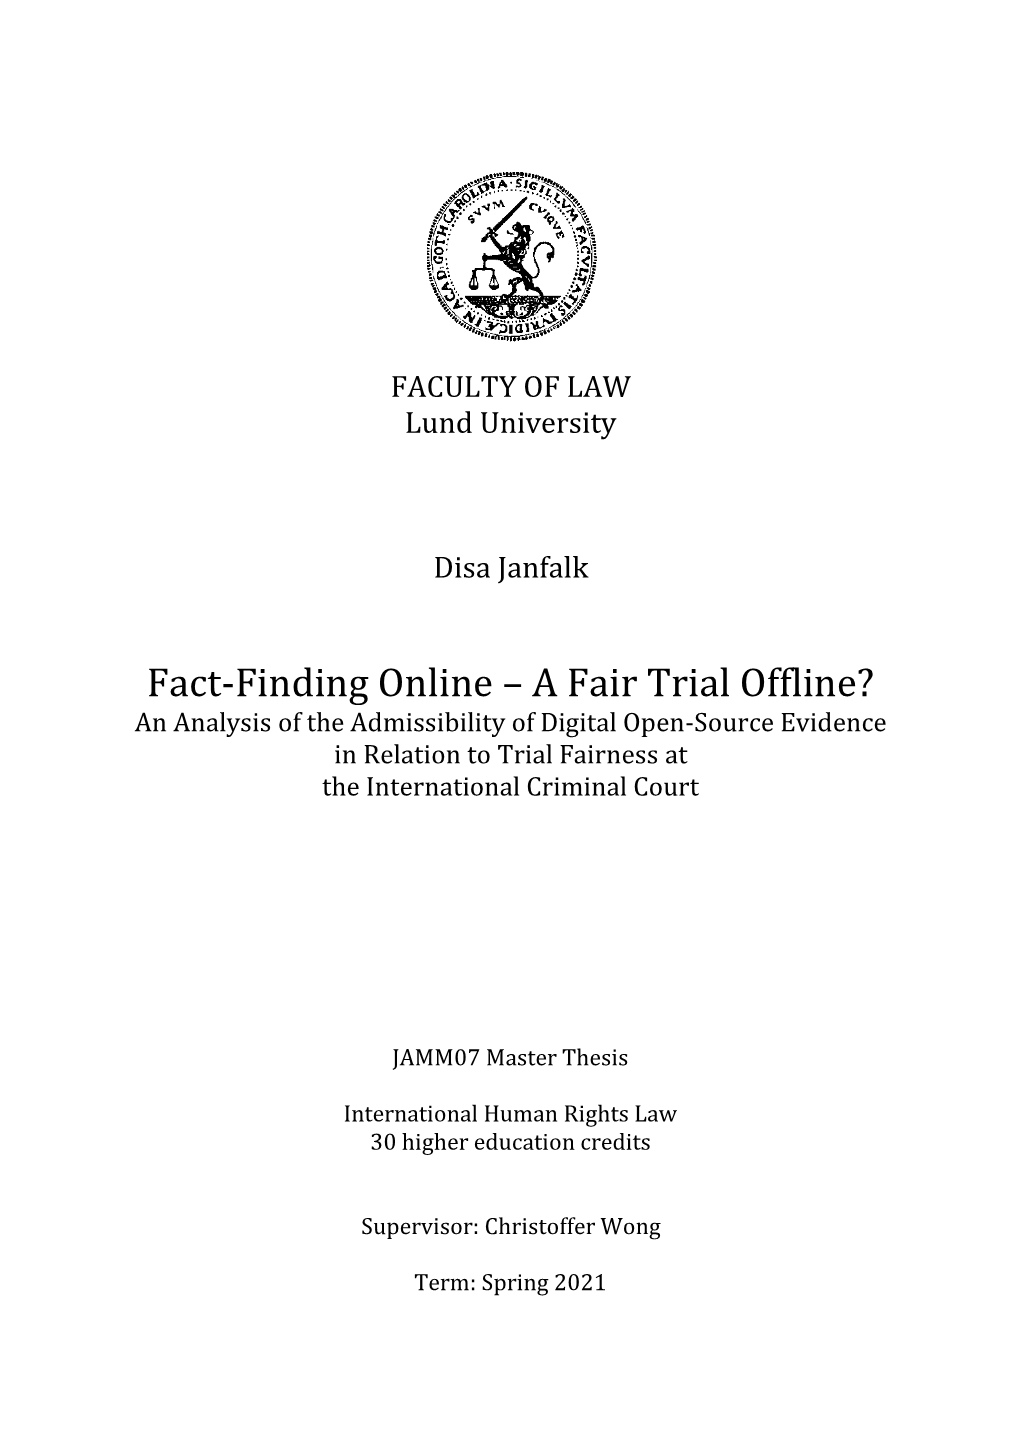 Fact-Finding Online – a Fair Trial Offline?